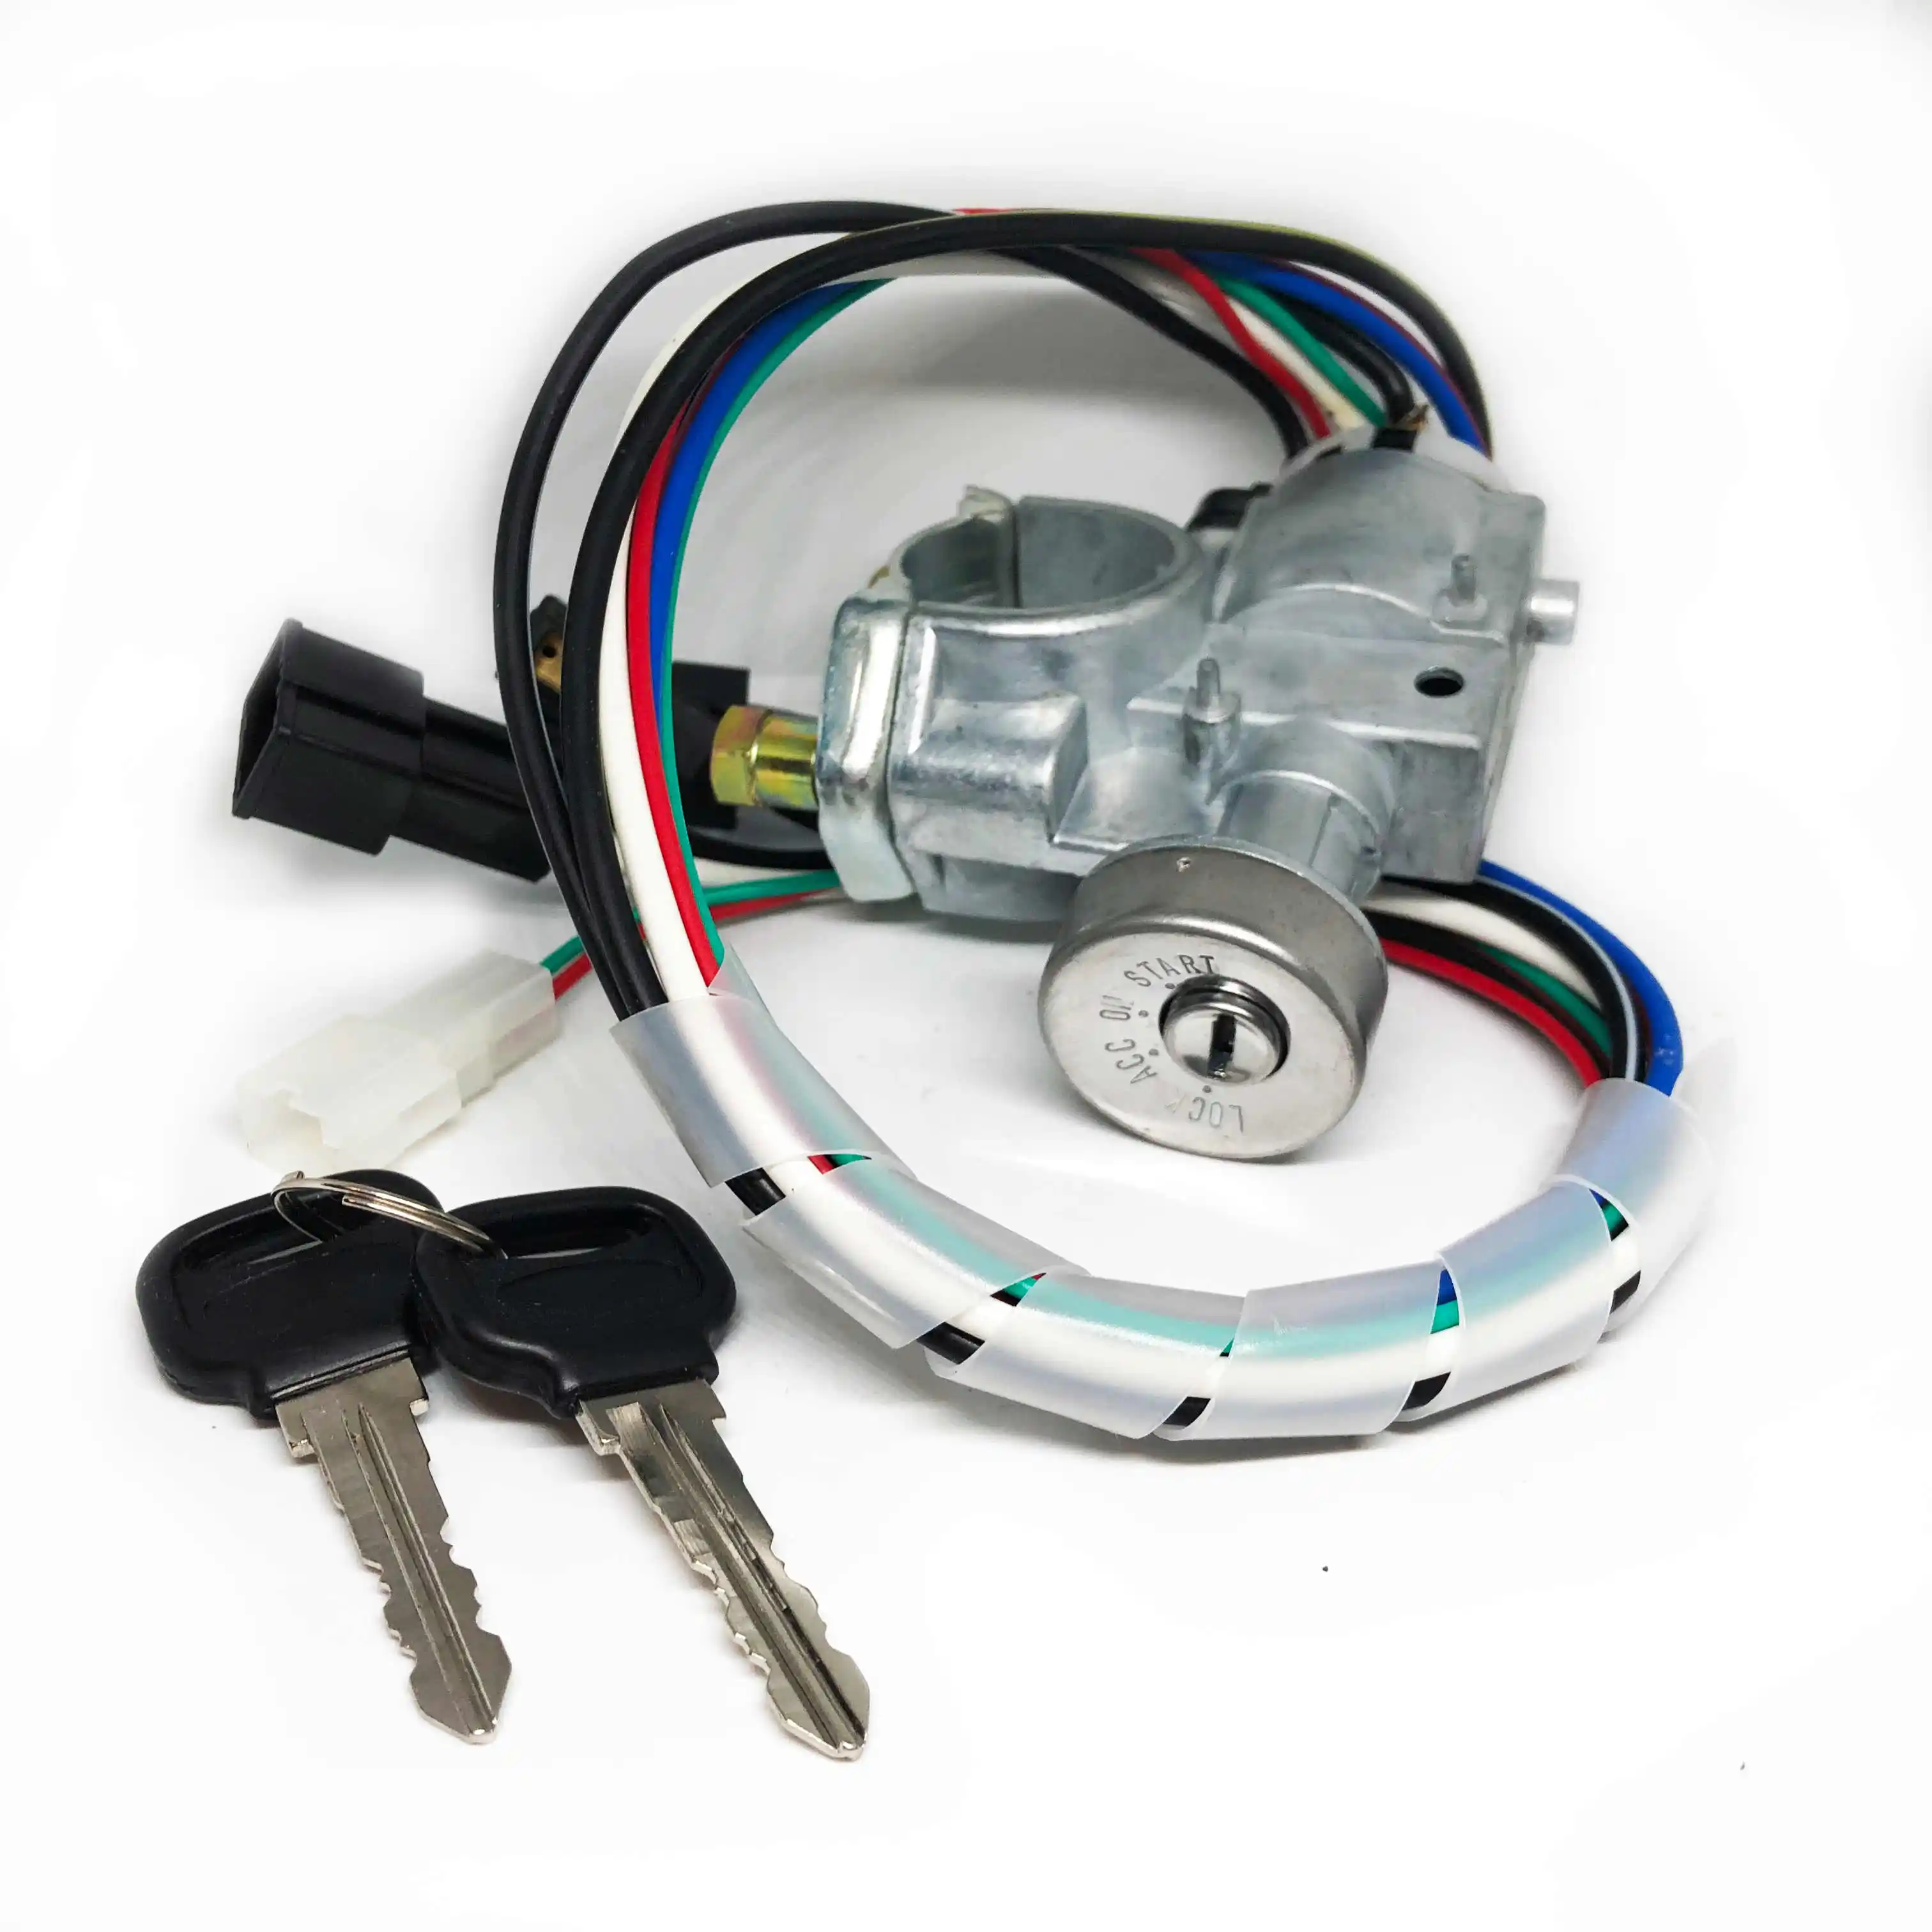 UB3976290 Zünd schalter mit Schlüssel passend für Mazda Pickup B2000 B2200 B2600 1986-1993 Auto